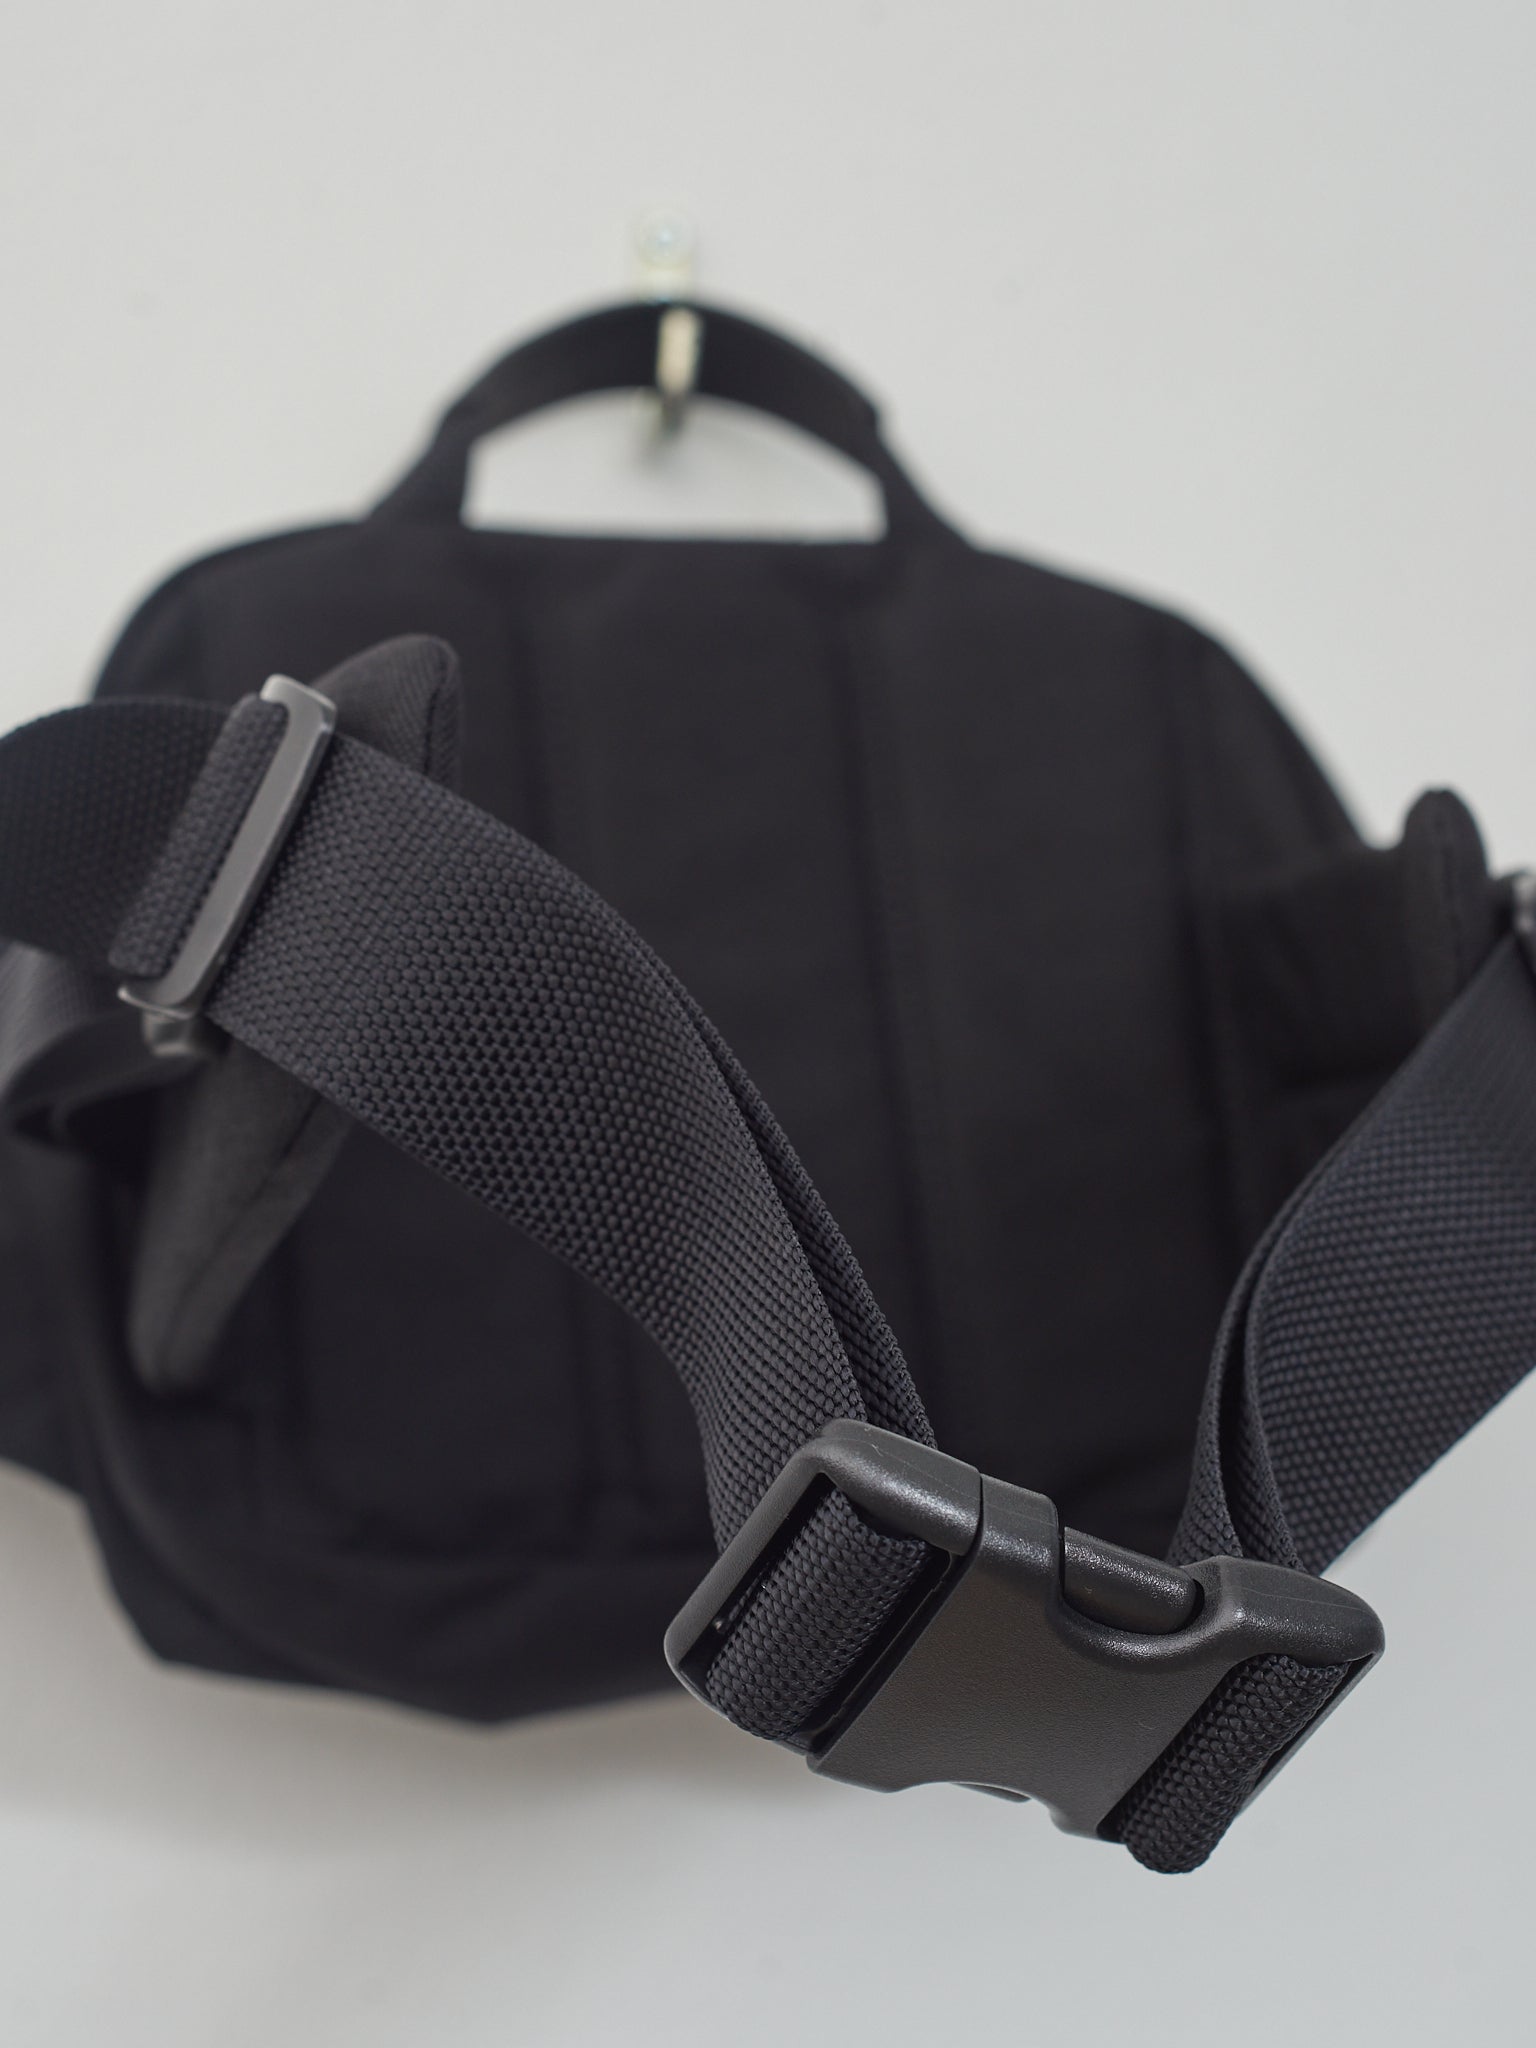 Namu Shop - Aeta Waist Bag S - Black